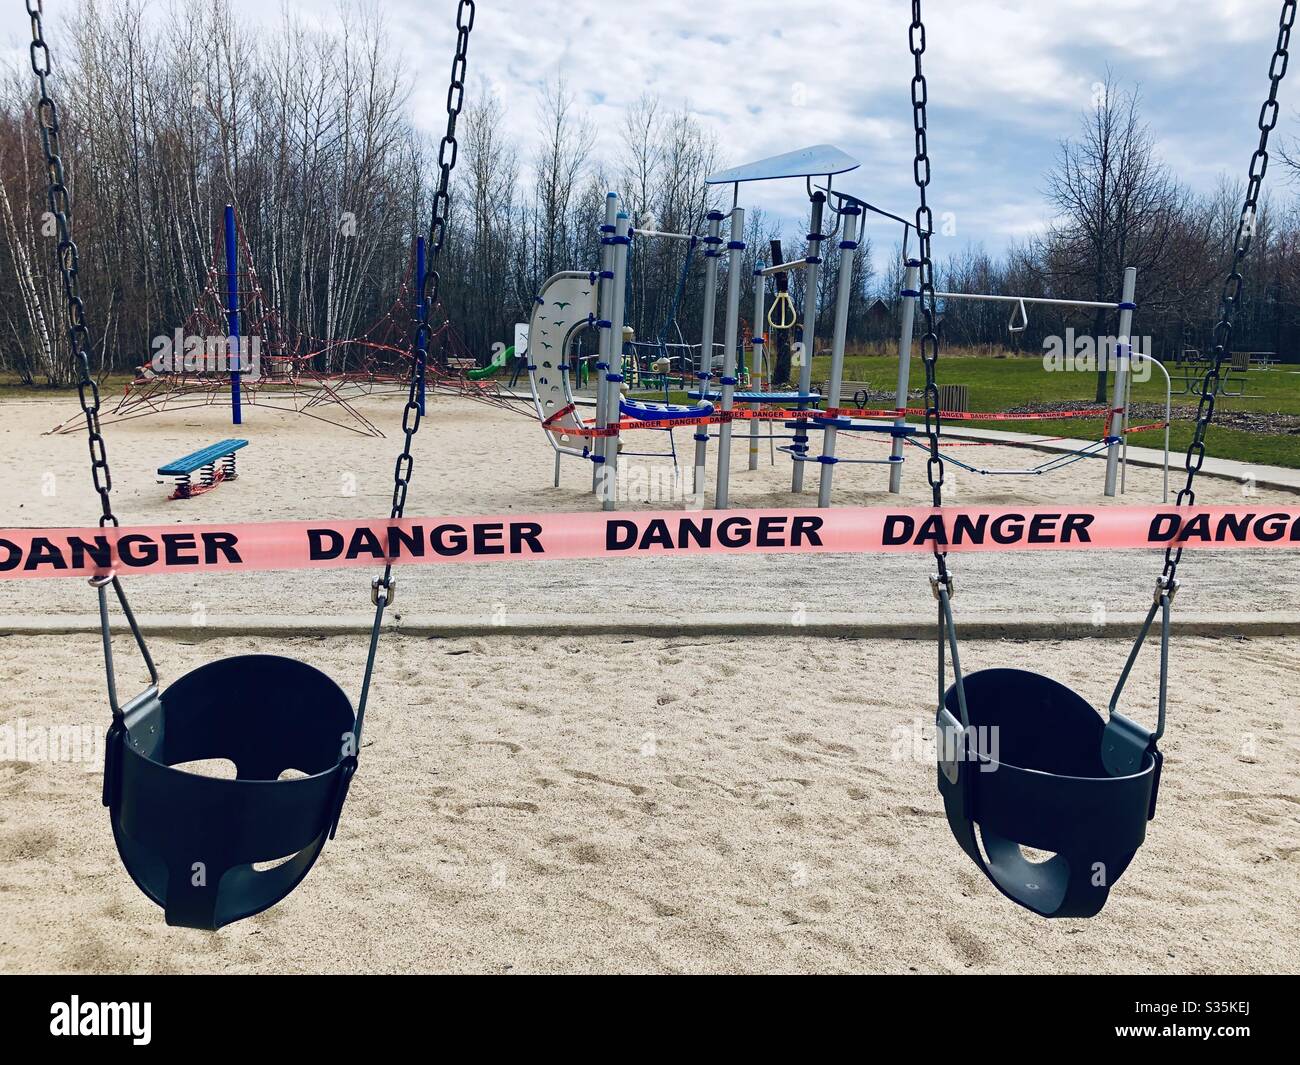 Parque infantil en un parque protegido por una bandera que muestra peligro durante el distanciamiento social Covid 19 Foto de stock